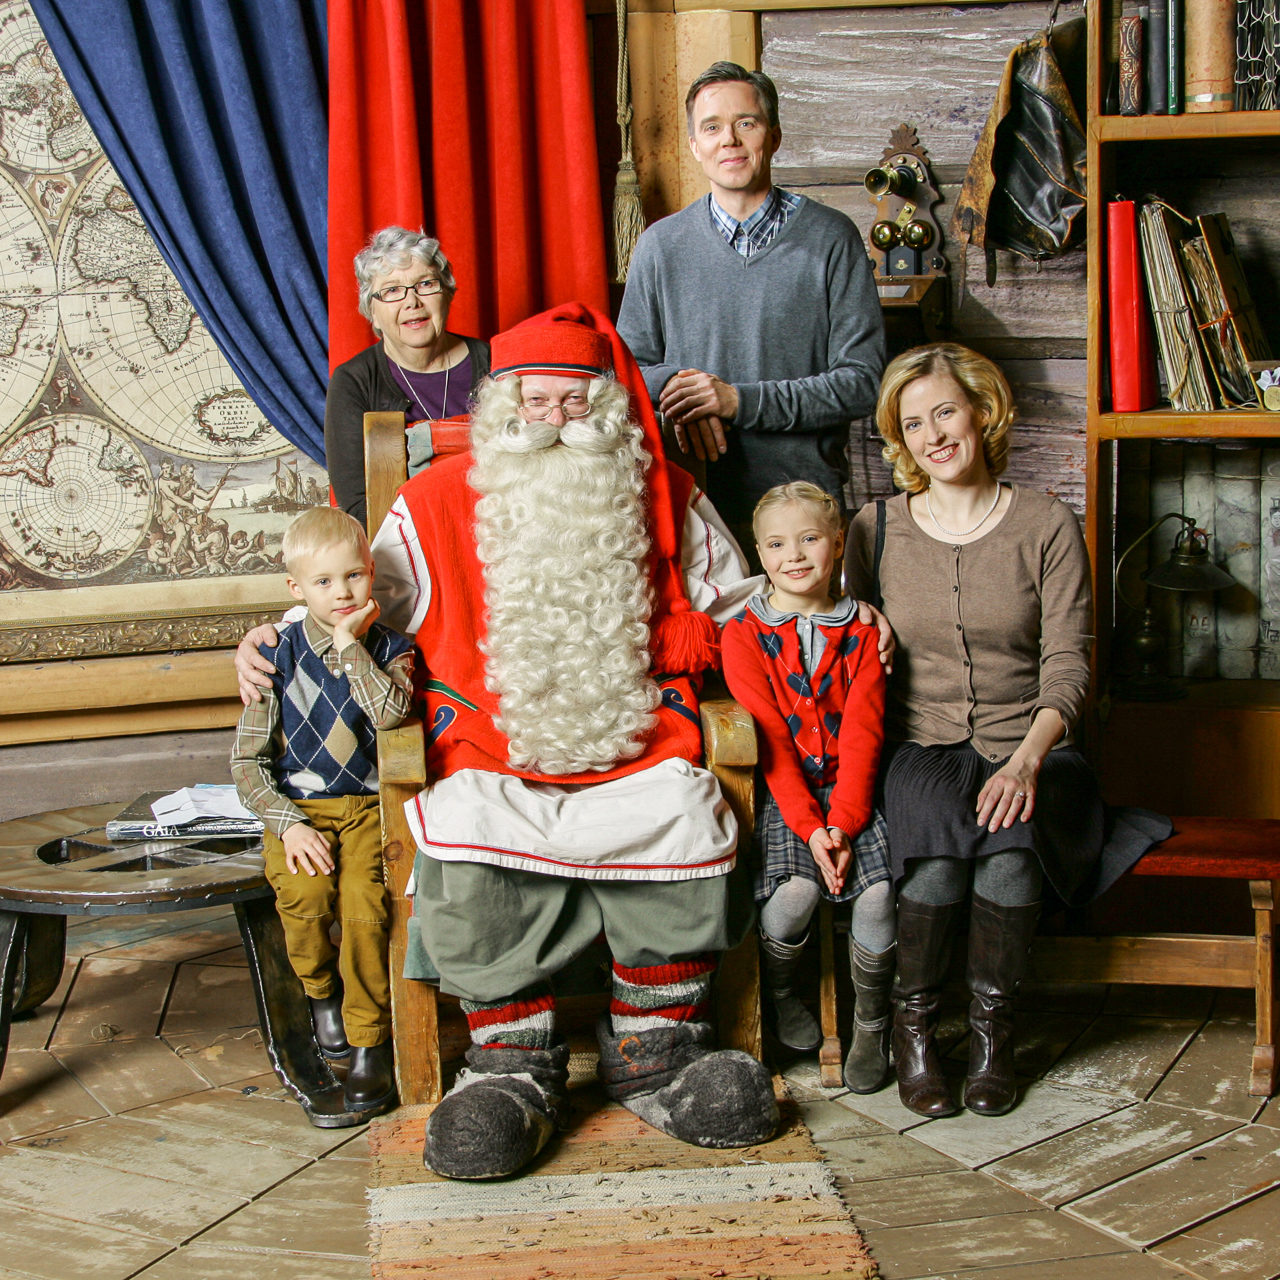 Rovaniemi activities – Visit to Santa Claus. Wild Nordic Finland @wildnordicfinland